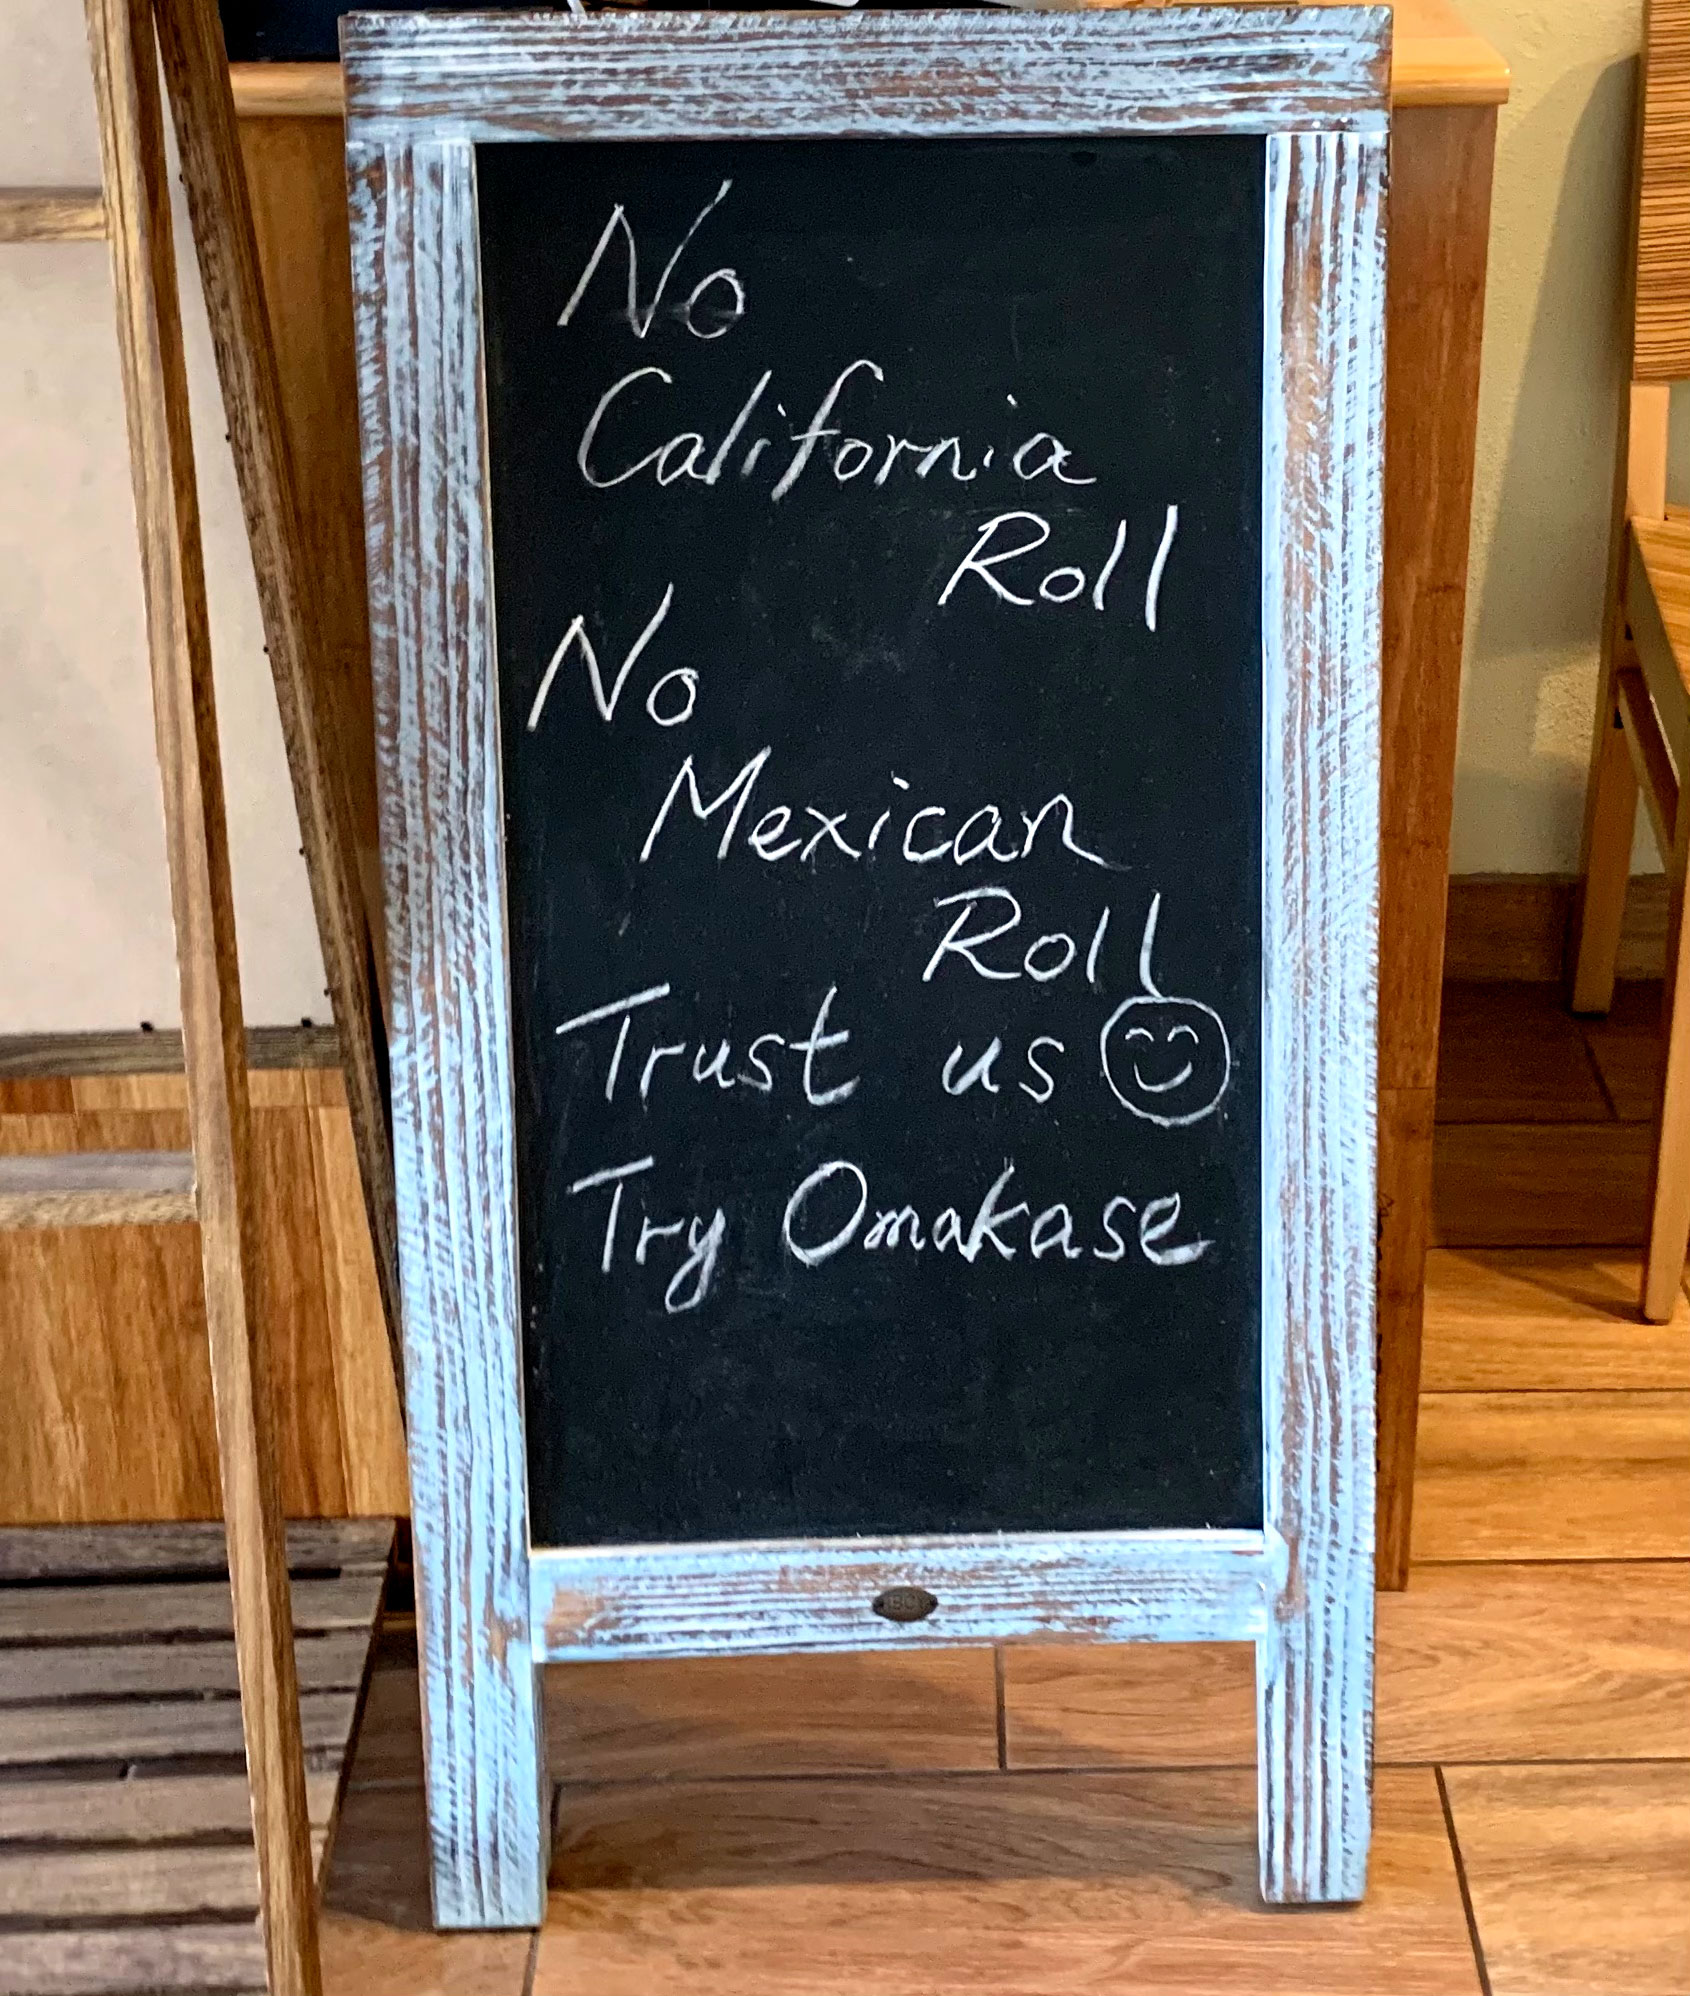 No California Roll Sign at Sushi Sho Rexley